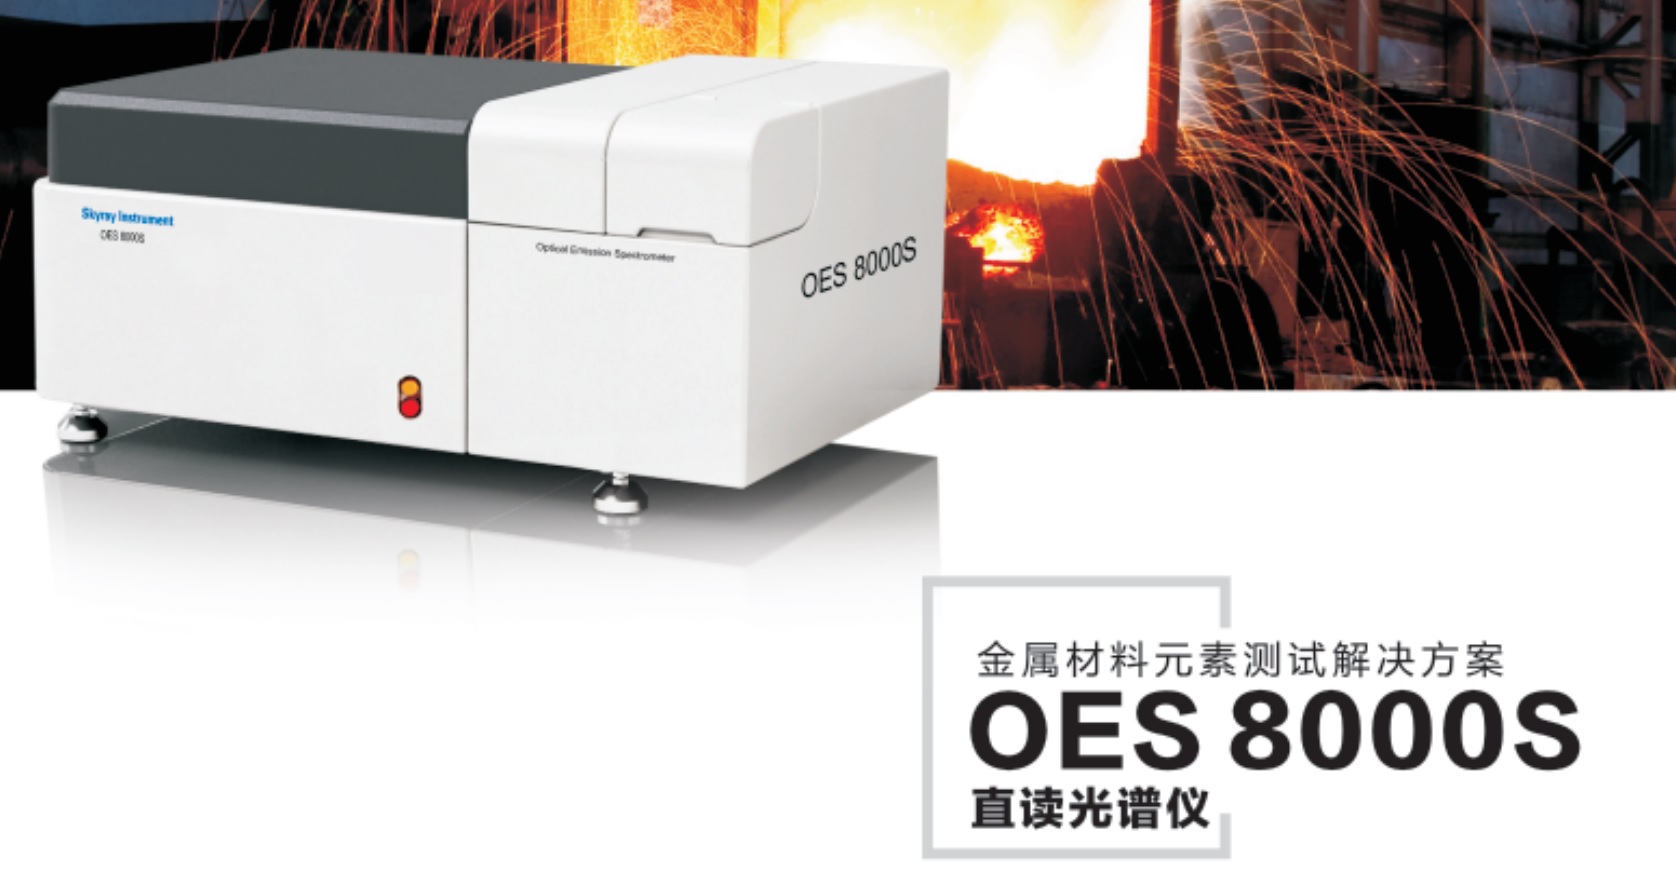 江蘇天瑞儀器股份有限公司-OES8000S